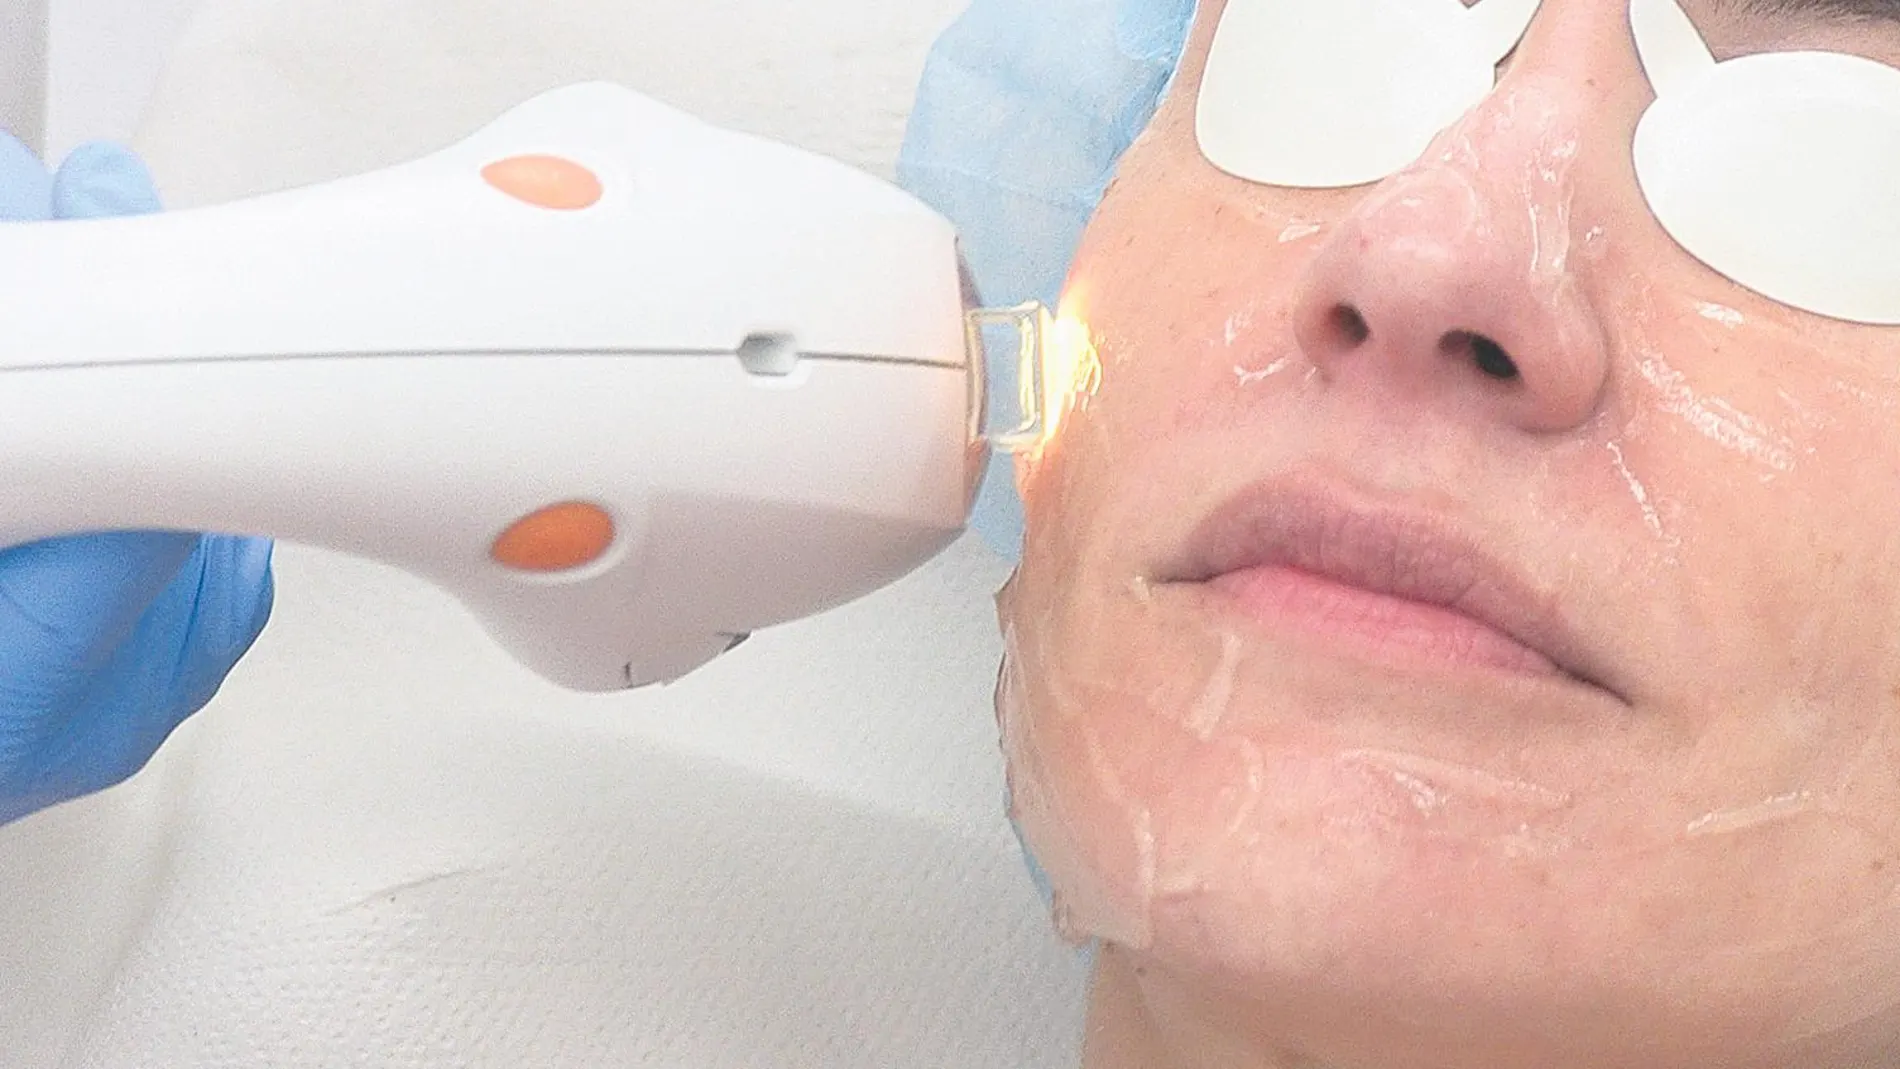 Desarrollan técnicas para el rejuvenecimiento facial sin cirugía con resultados sin precedentes | Imagen cedida